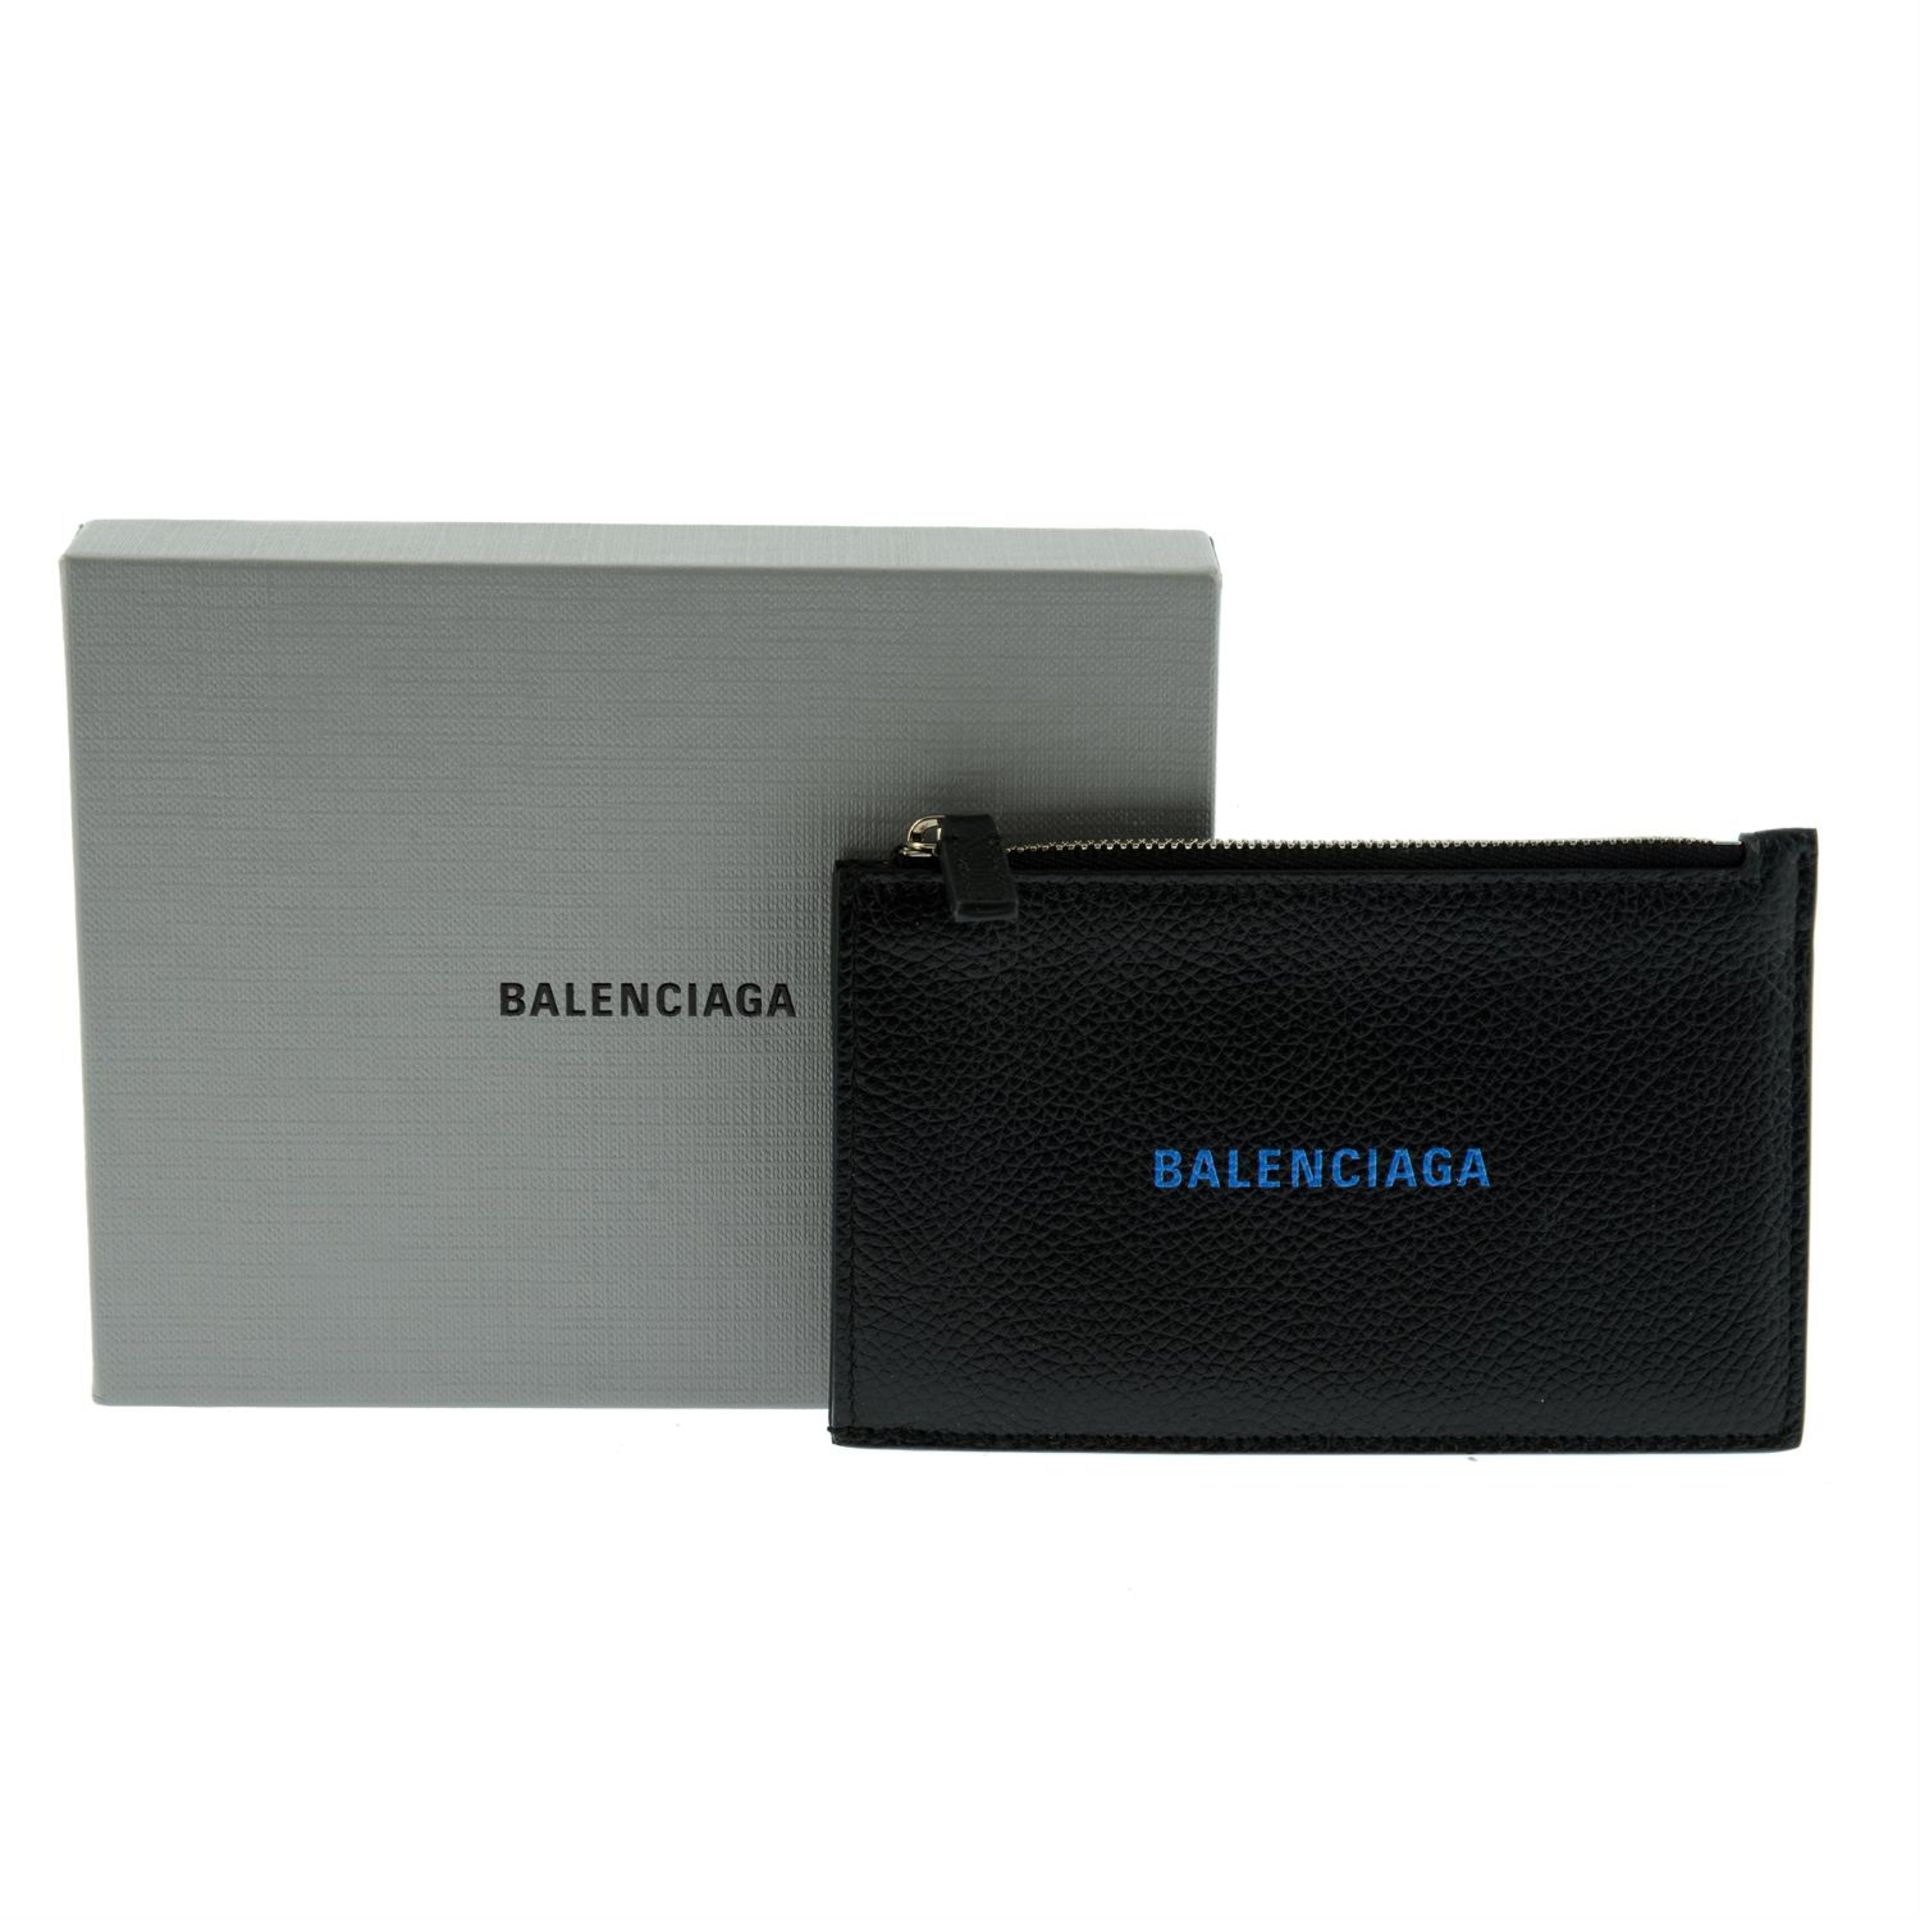 BALENCIAGA - a black leather card wallet.